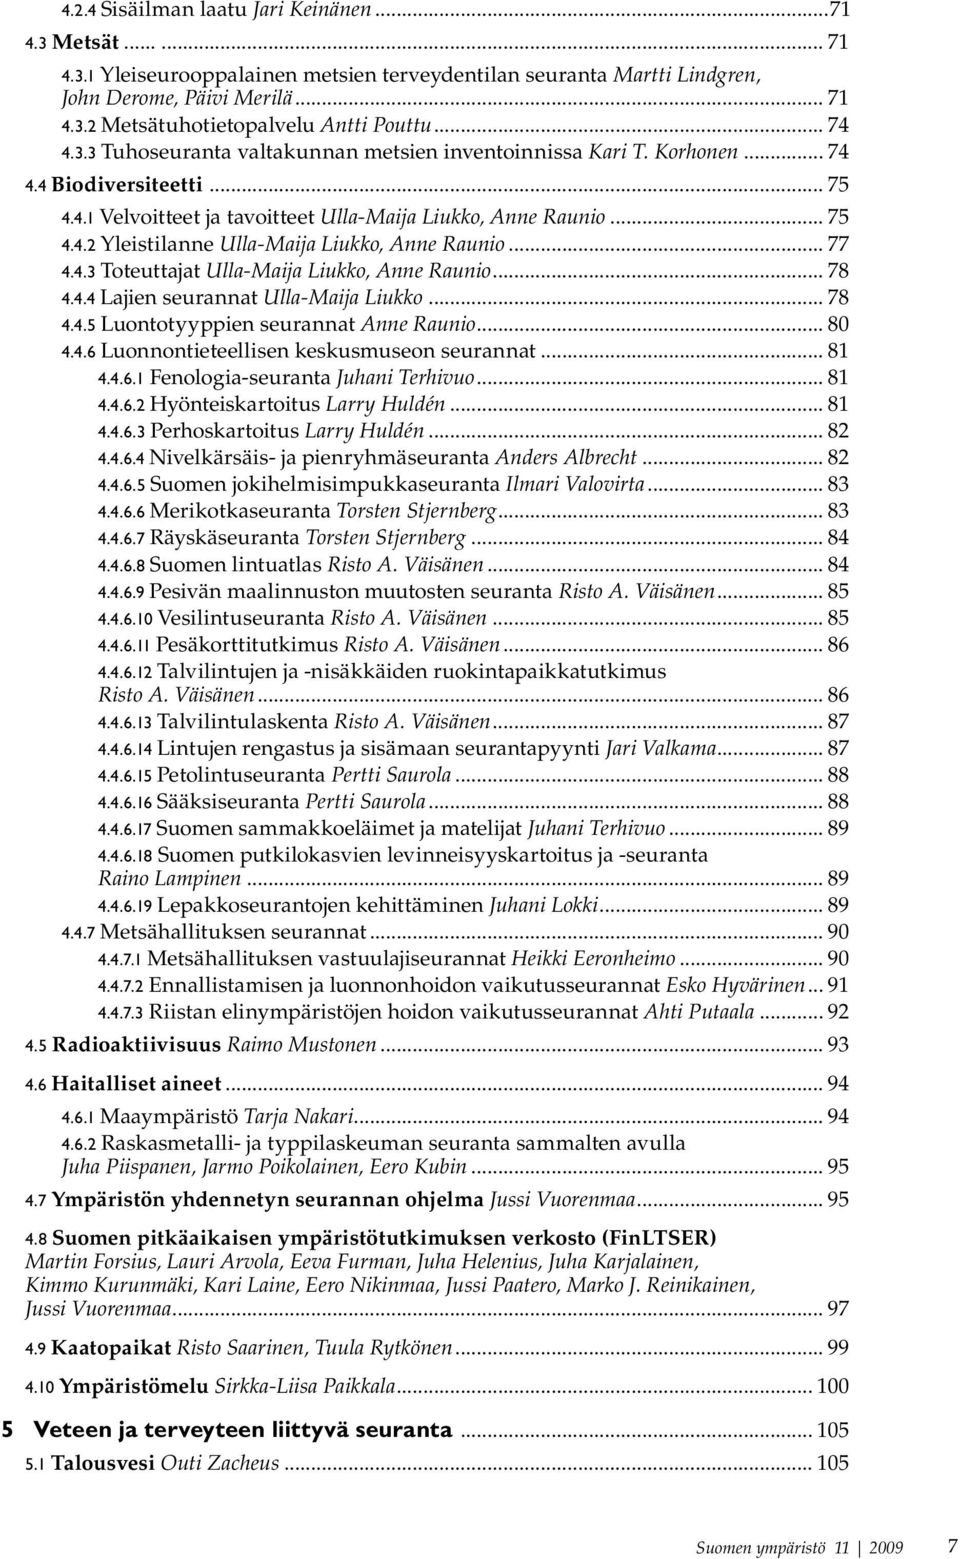 .. 77 4.4.3 Toteuttajat Ulla-Maija Liukko, Anne Raunio... 78 4.4.4 Lajien seurannat Ulla-Maija Liukko... 78 4.4.5 Luontotyyppien seurannat Anne Raunio... 80 4.4.6 Luonnontieteellisen keskusmuseon seurannat.